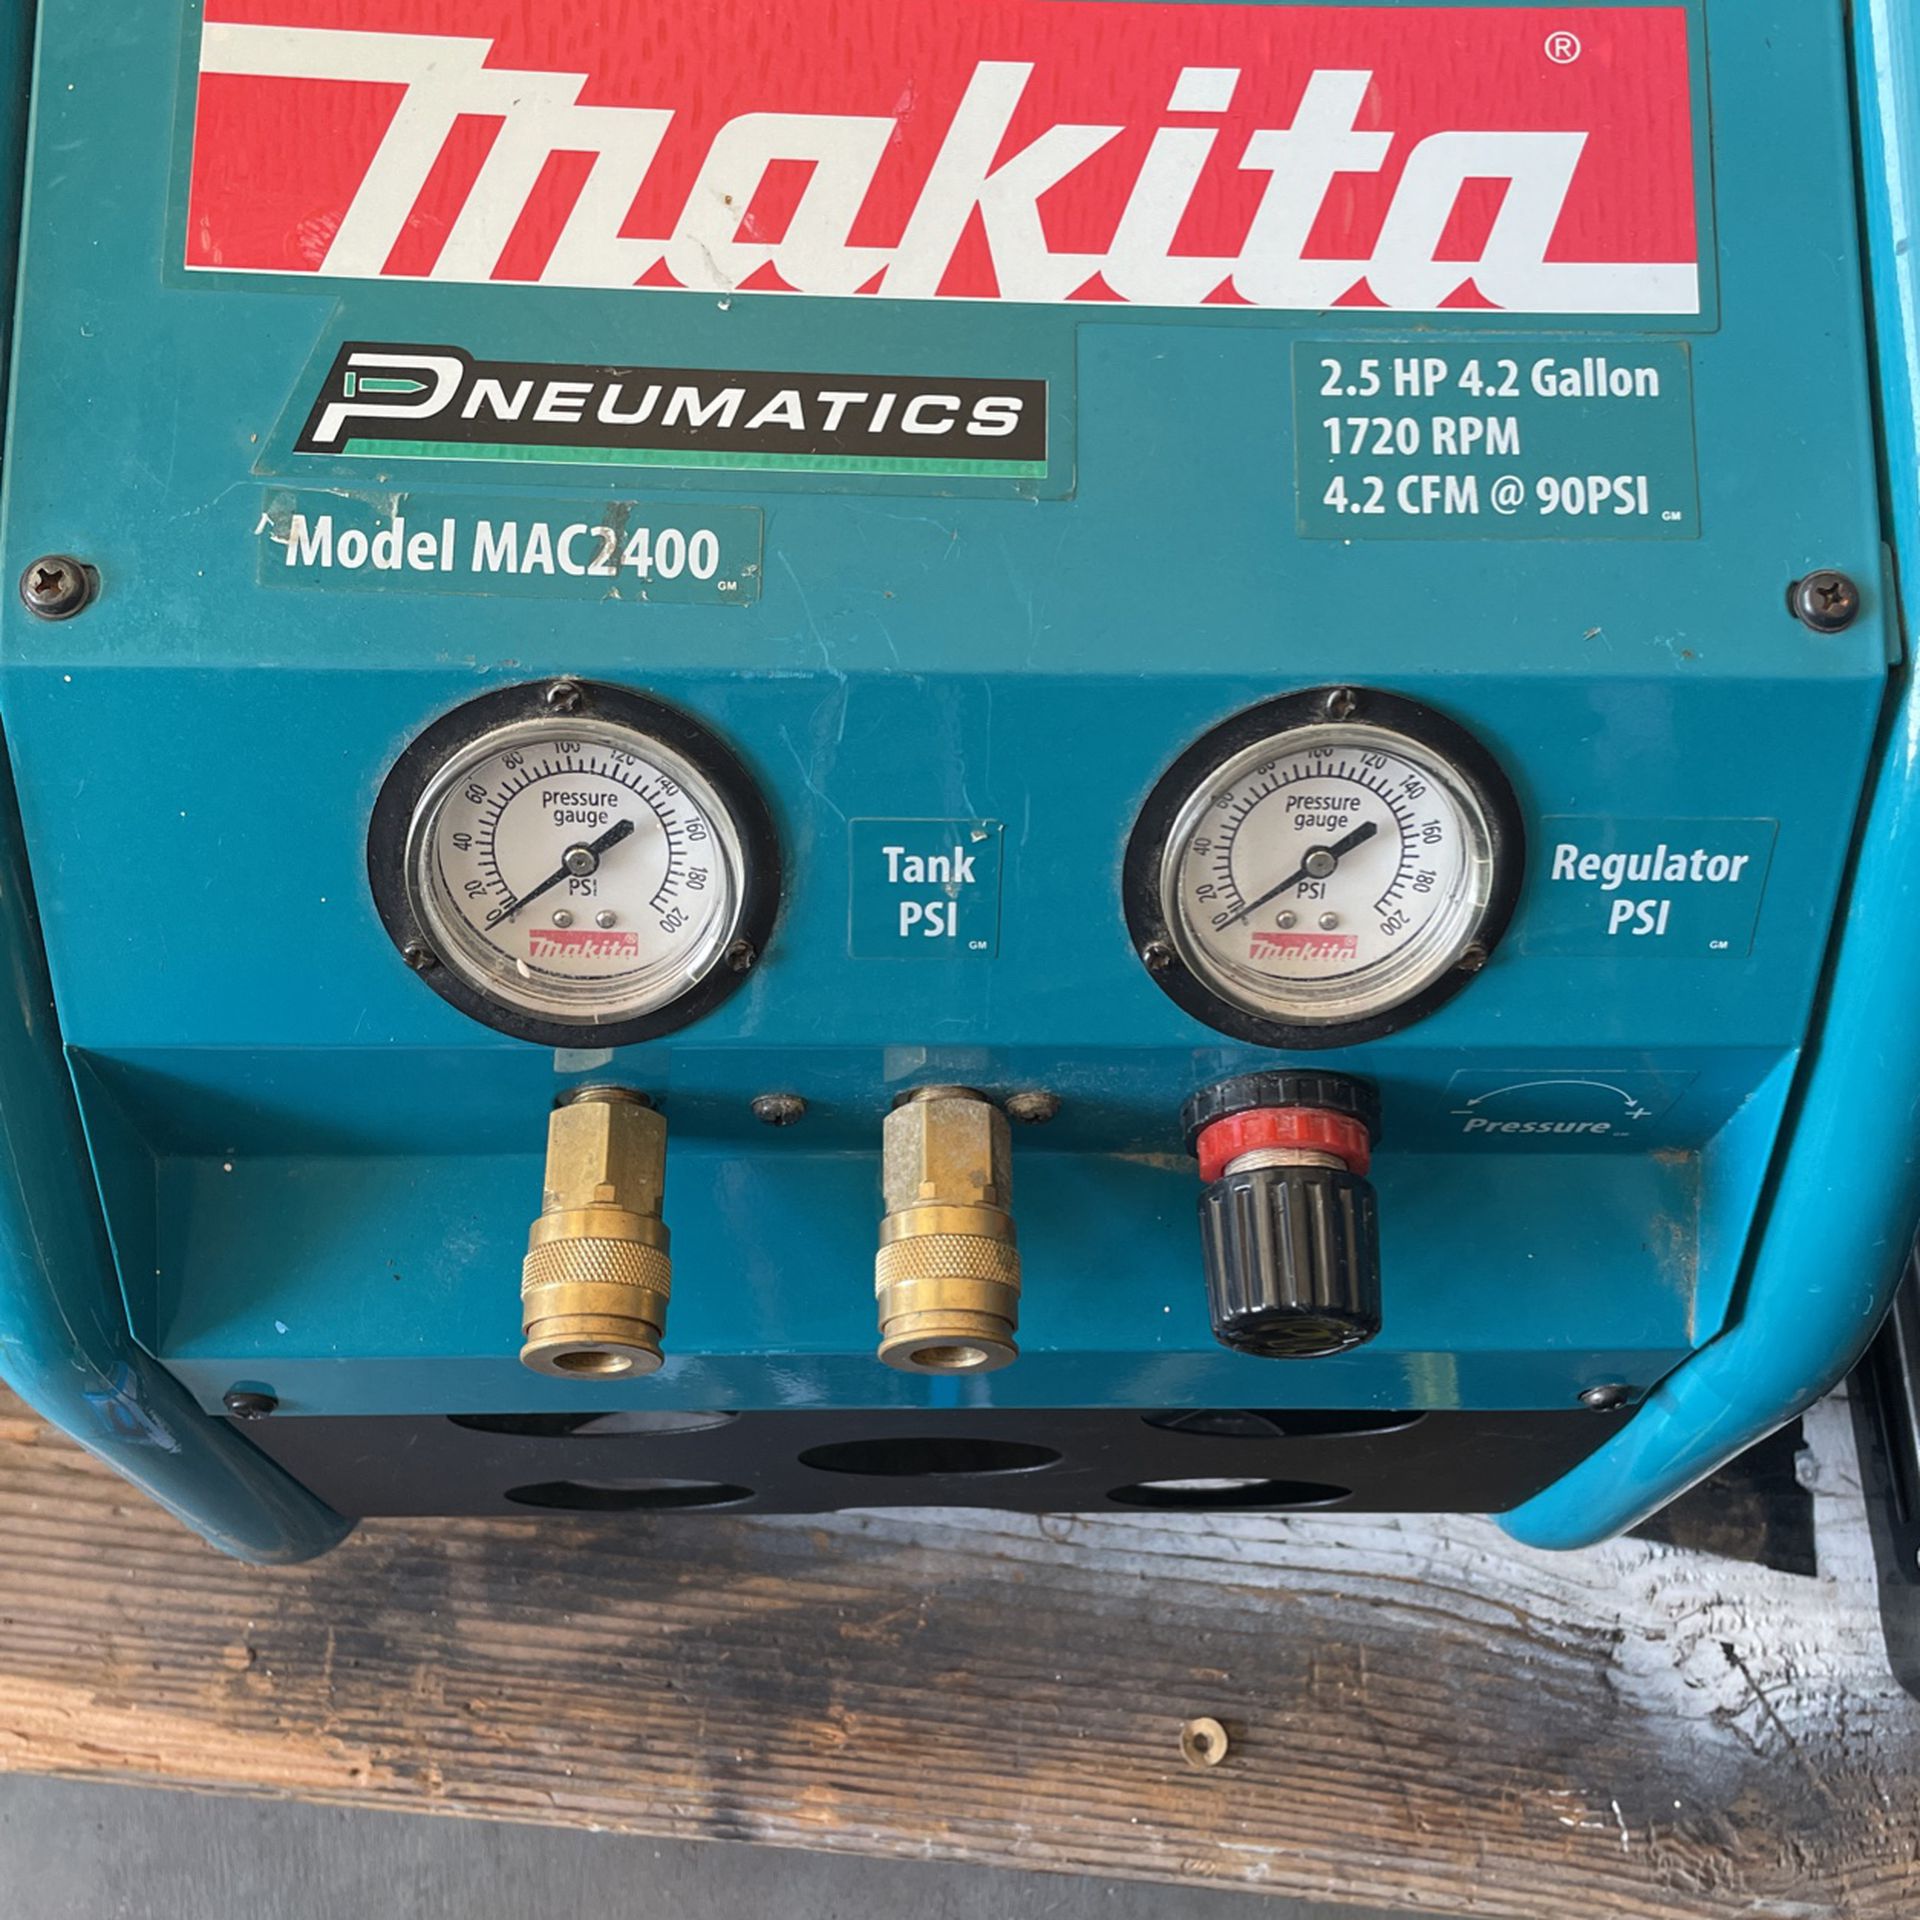 Makita Air Compressor 